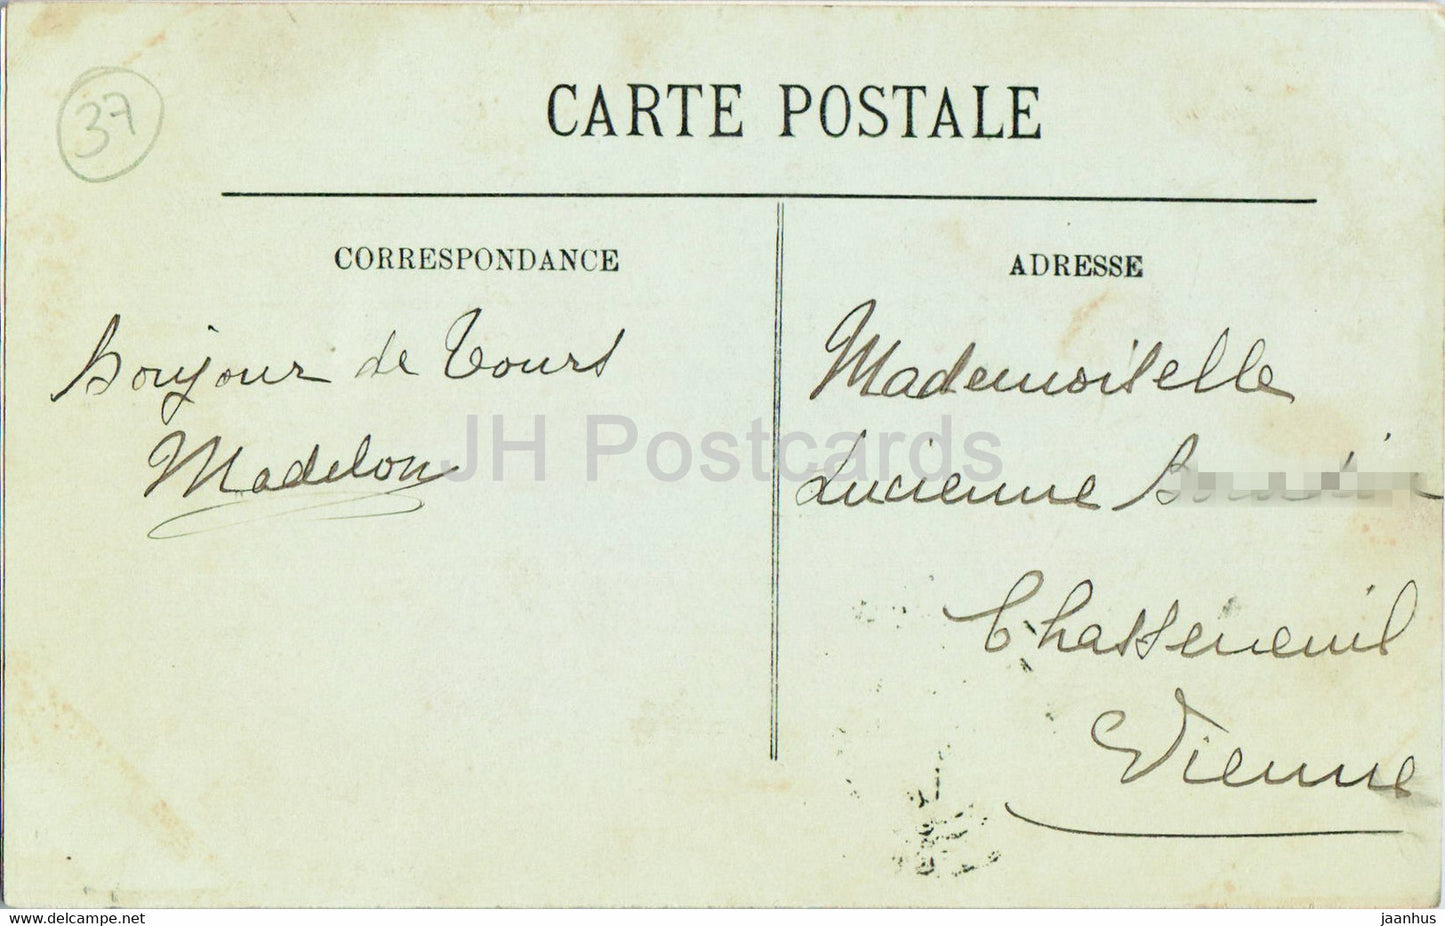 Tours - Le Dome de la Basilique Saint Martin - La Ville et la Cathedrale - 33 - old postcard - 1912 - France - used